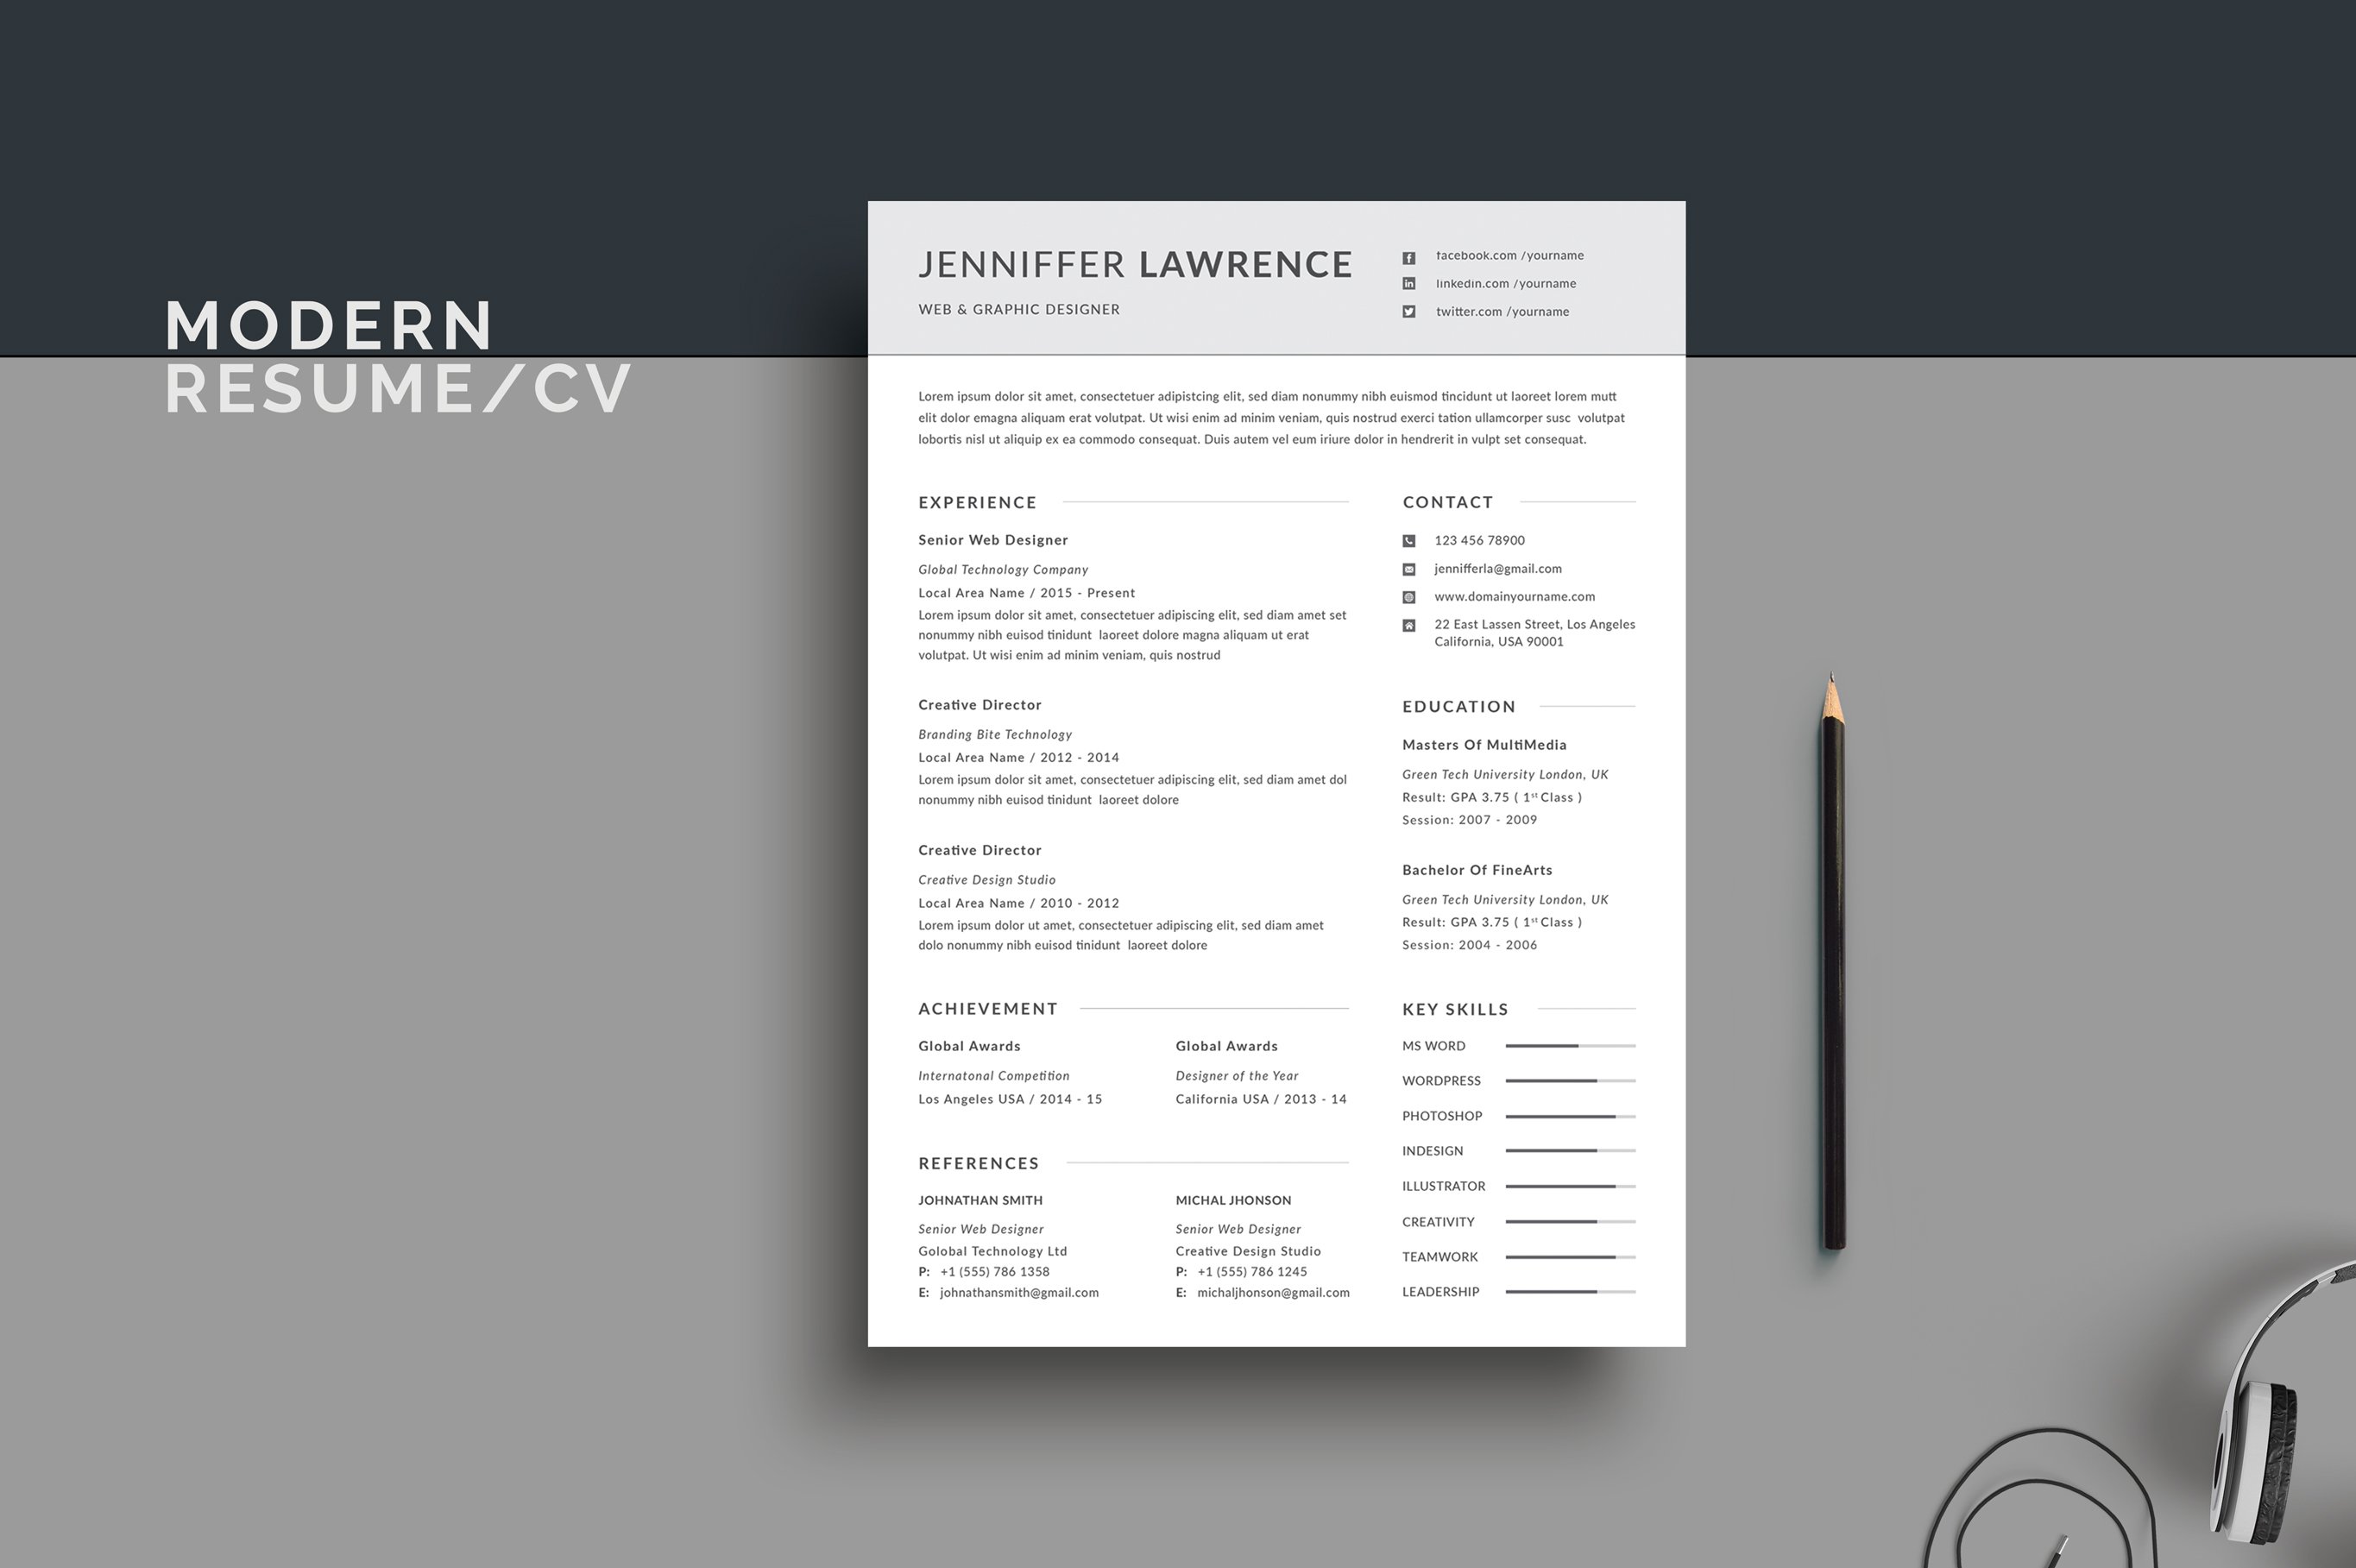 Modern Resume/CV cover image.